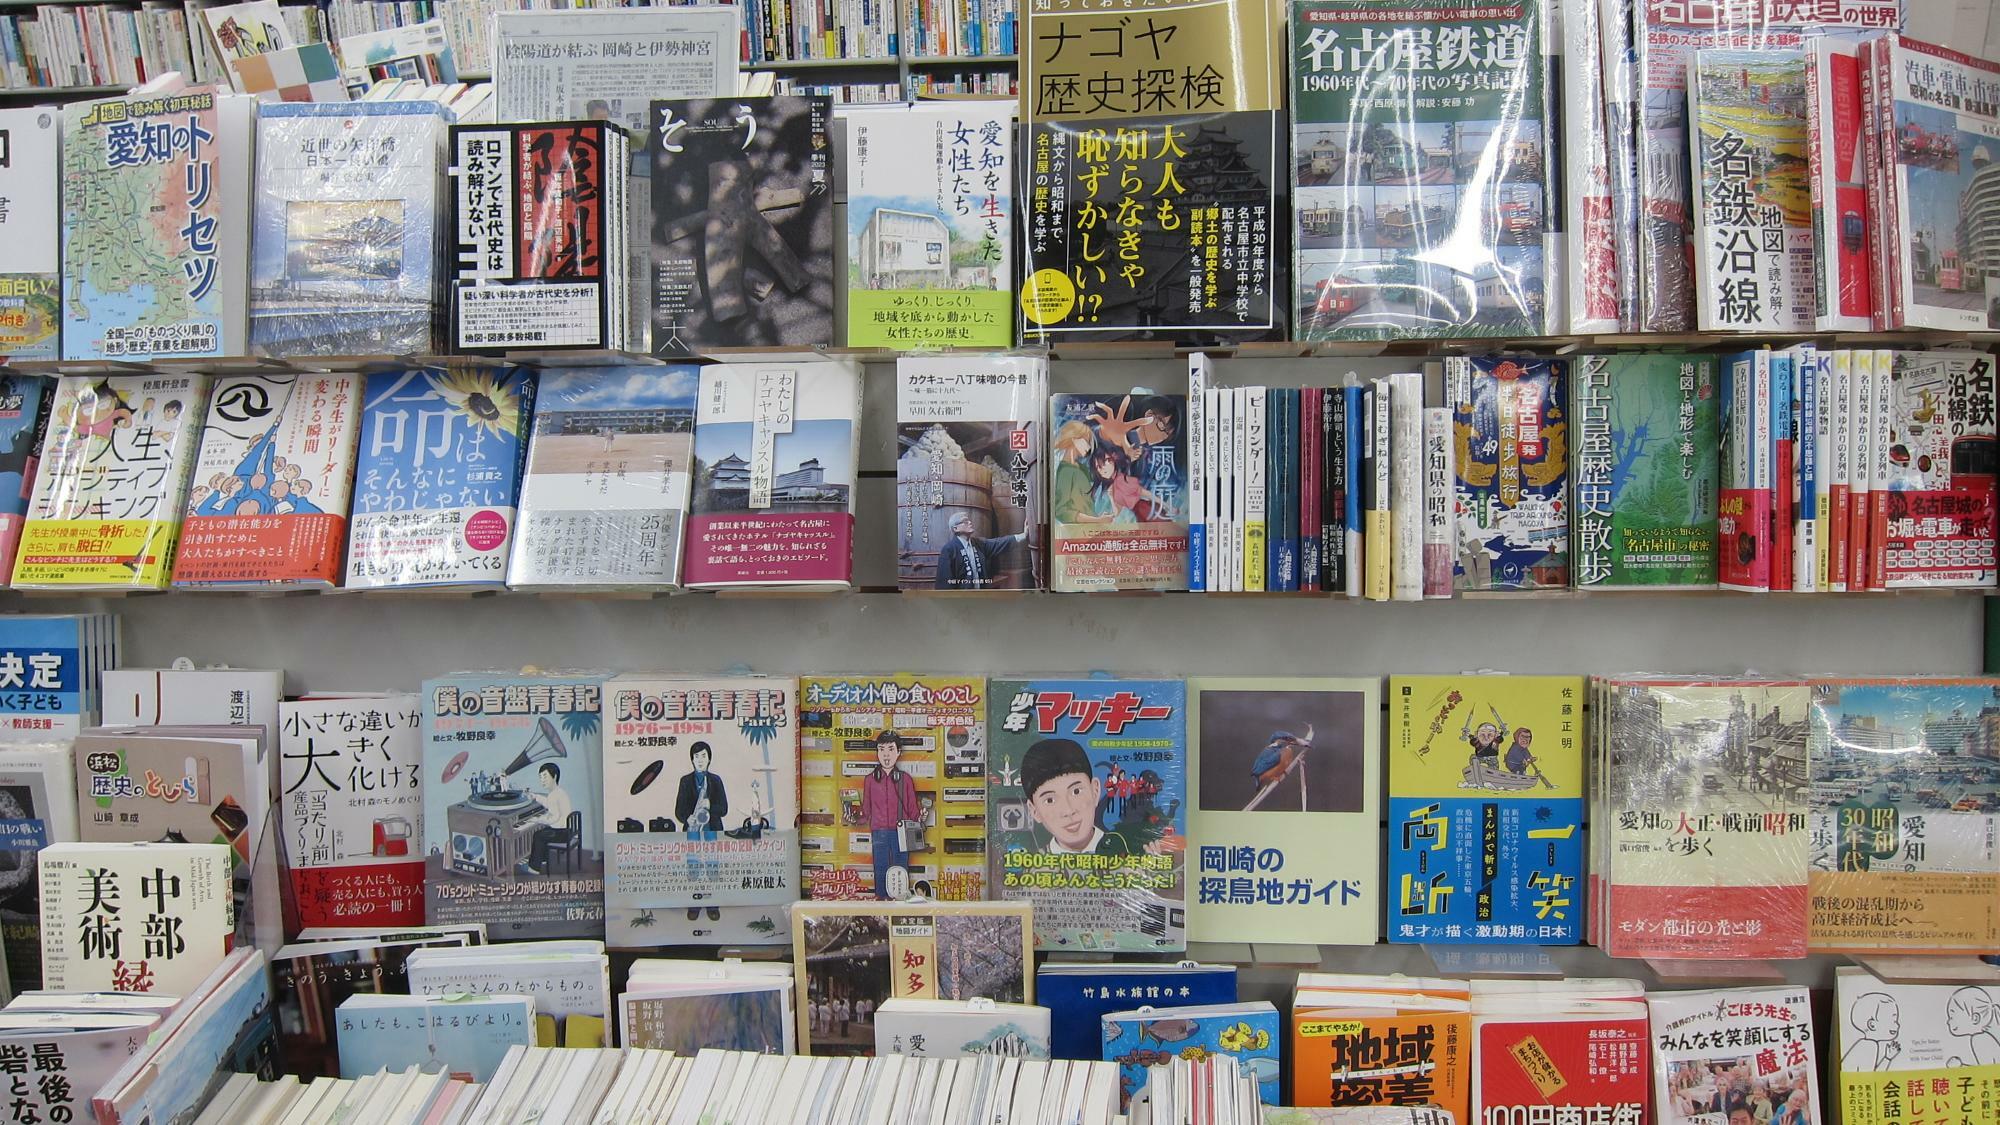 愛知県や岡崎に関する書籍がたくさん